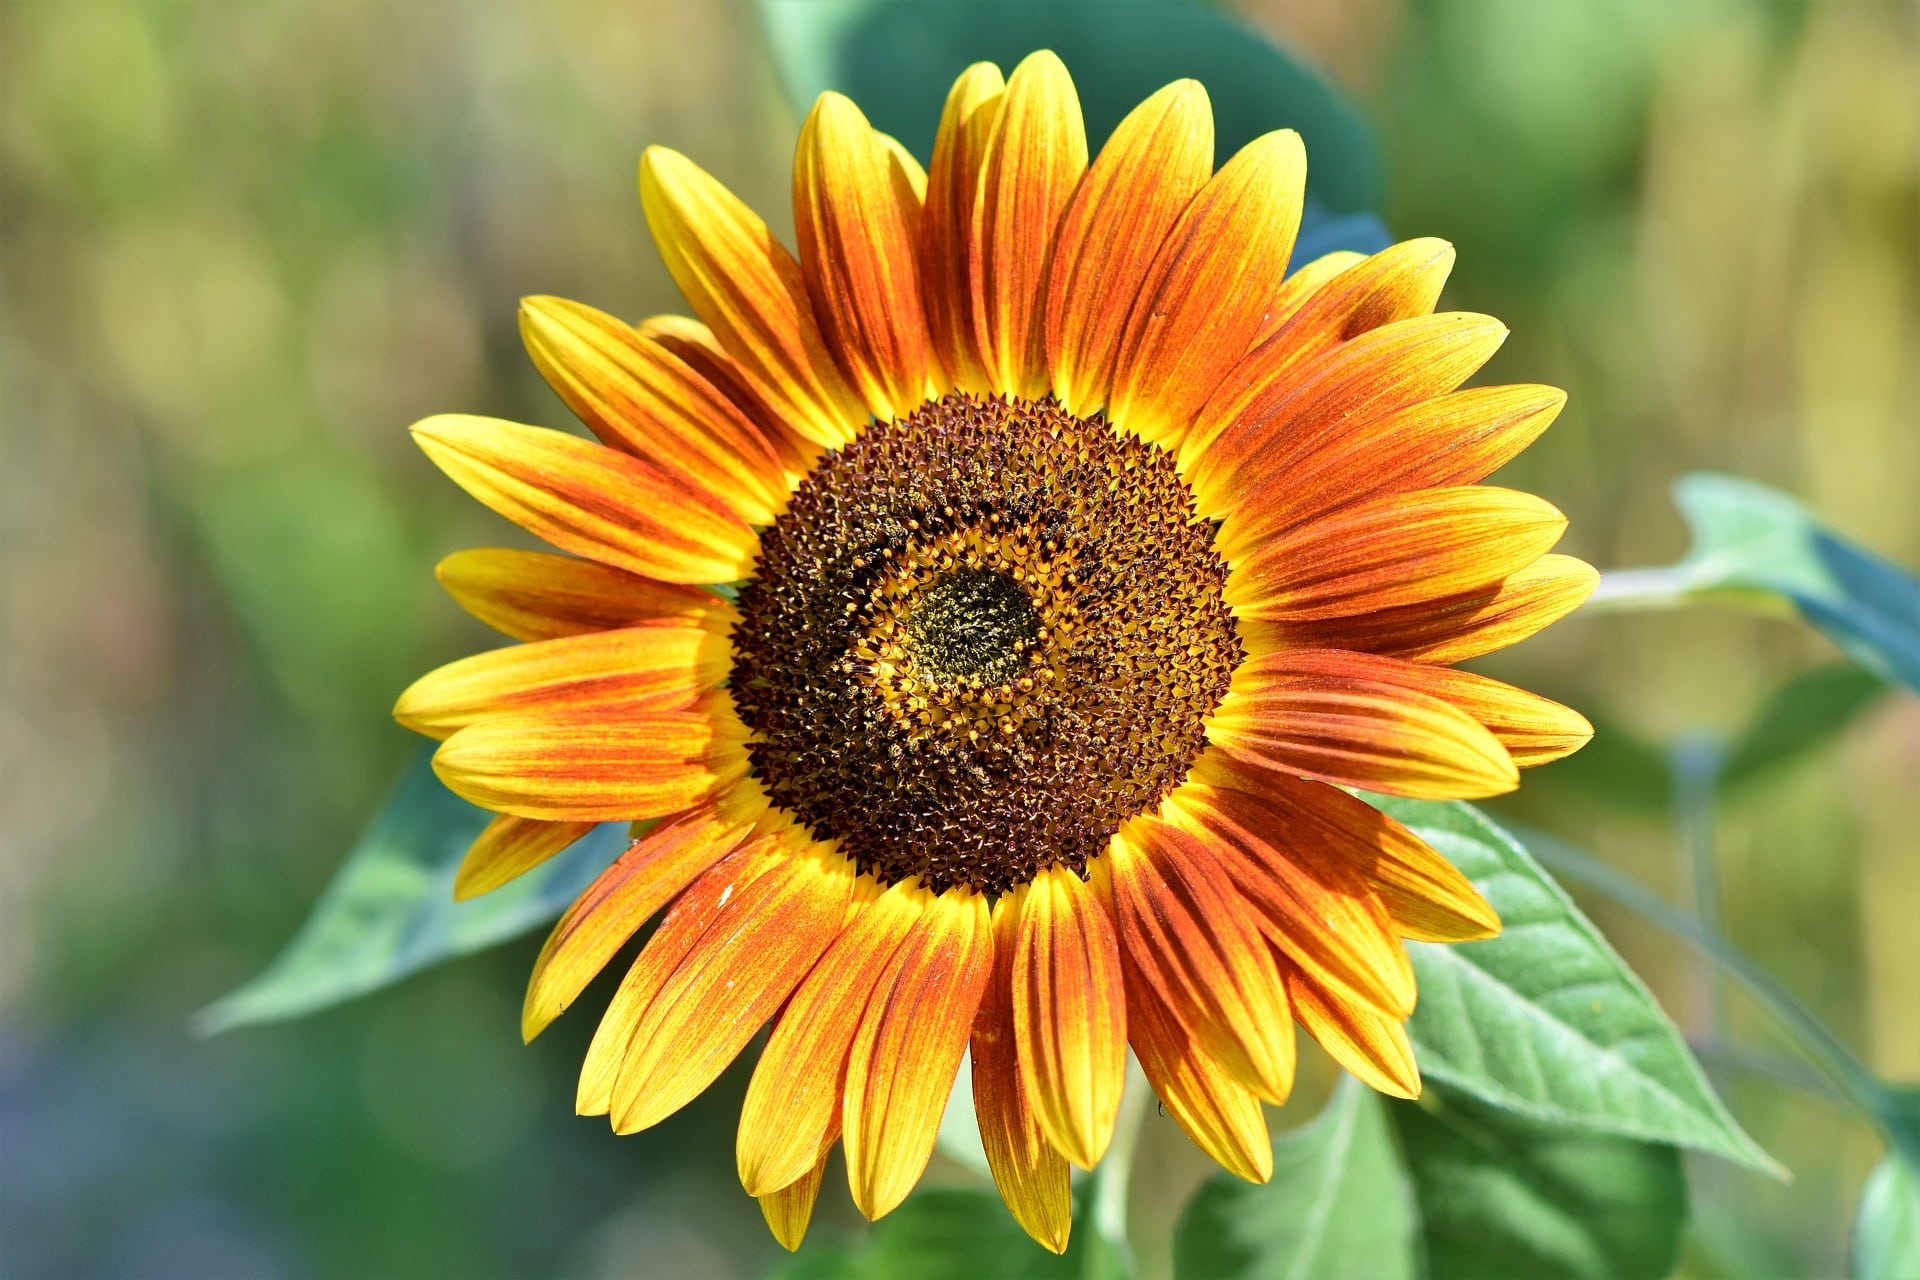 Sonnenblumen im Garten säen, pflanzen und pflegen - beetfreunde.de